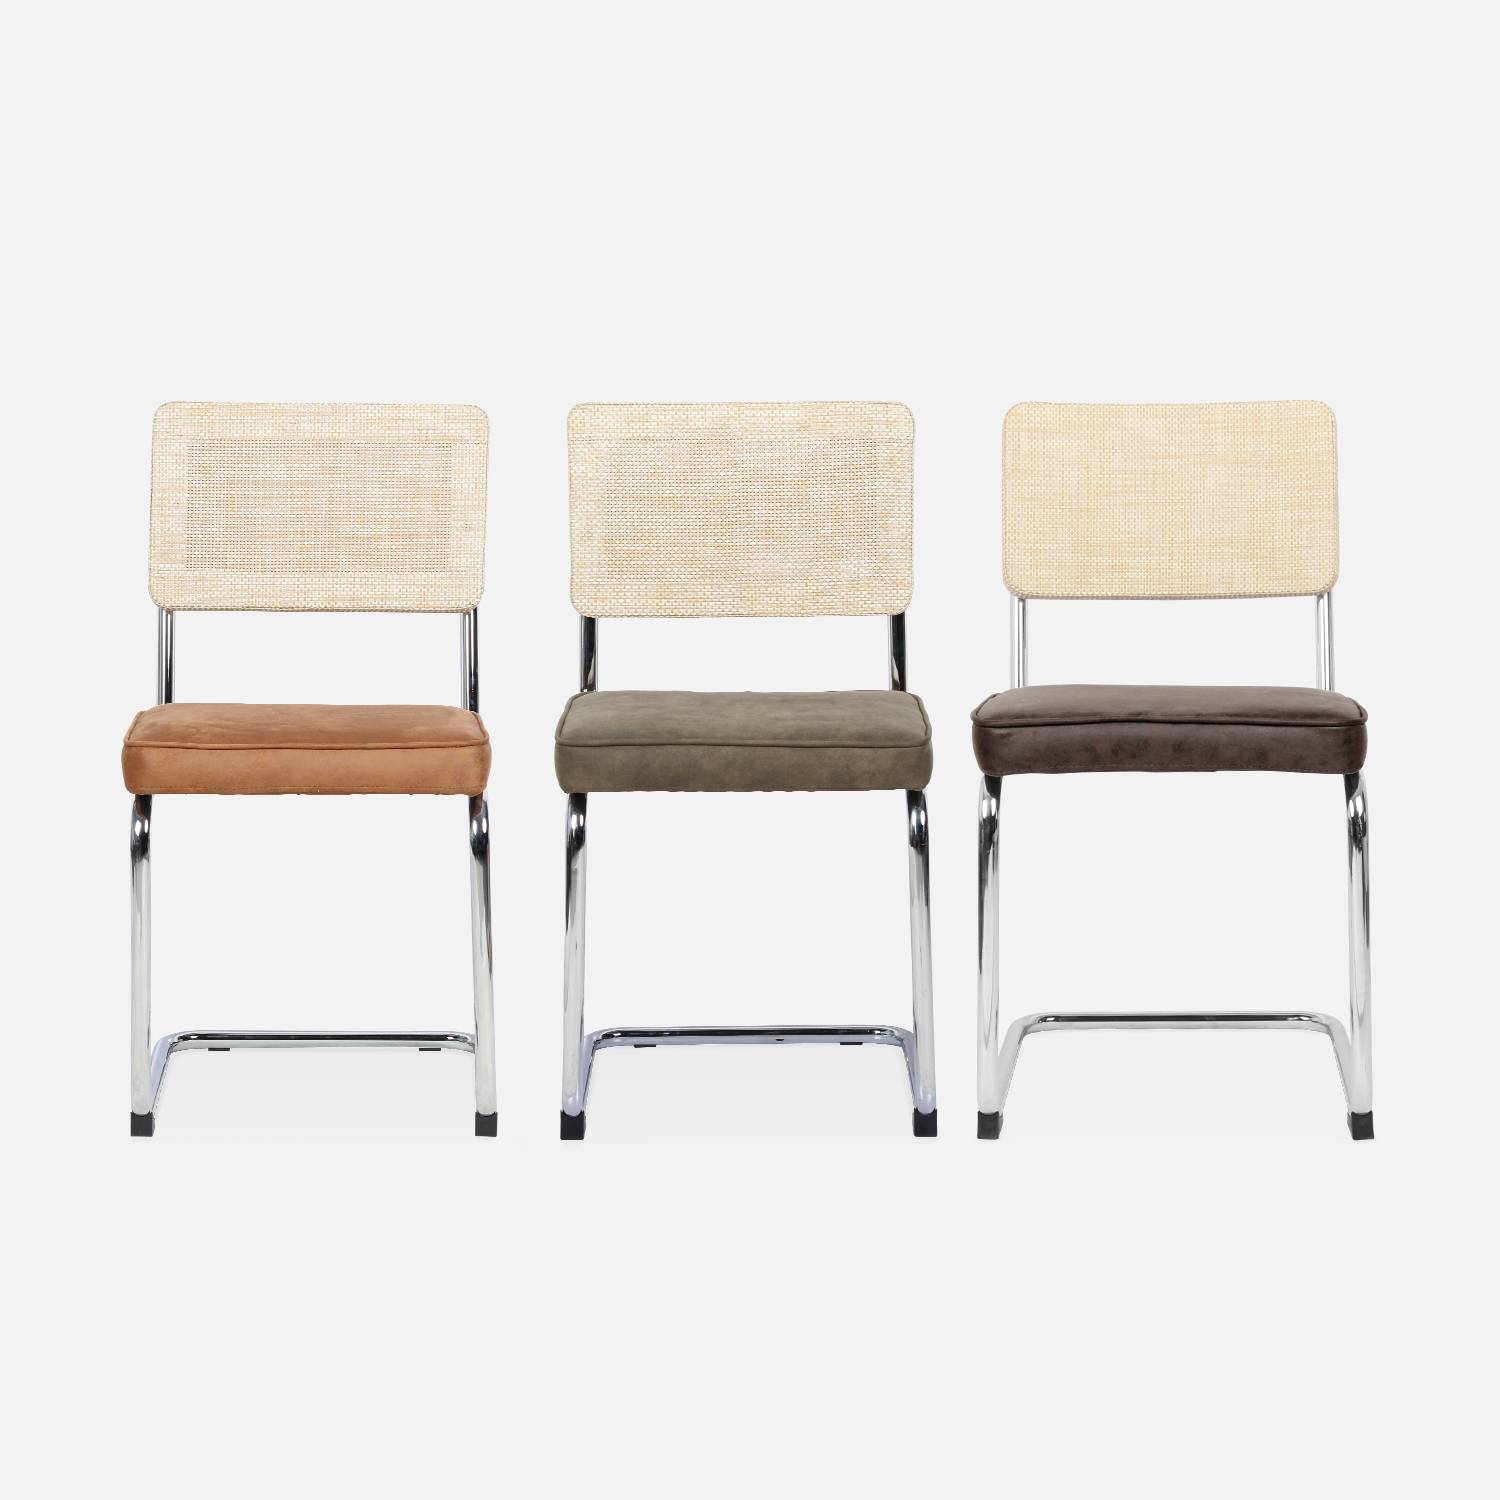 2 chaises cantilever - Maja - tissu marron clair et résine effet rotin, 46 x 54,5 x 84,5cm   Photo7